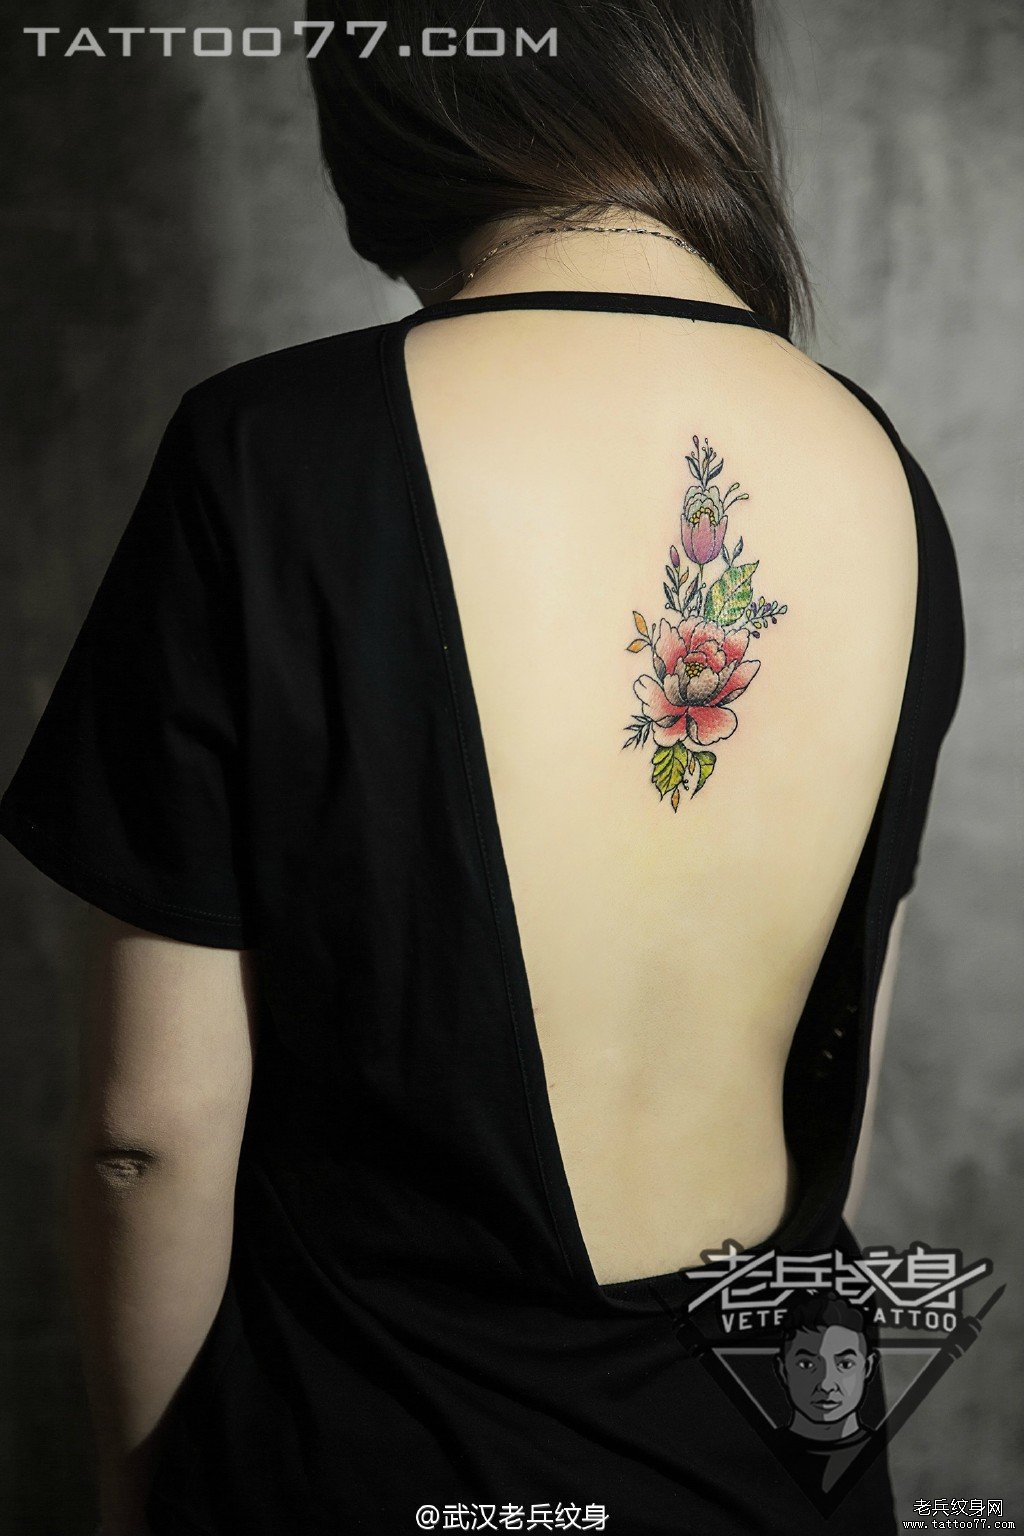 脊椎花卉纹身图案作品